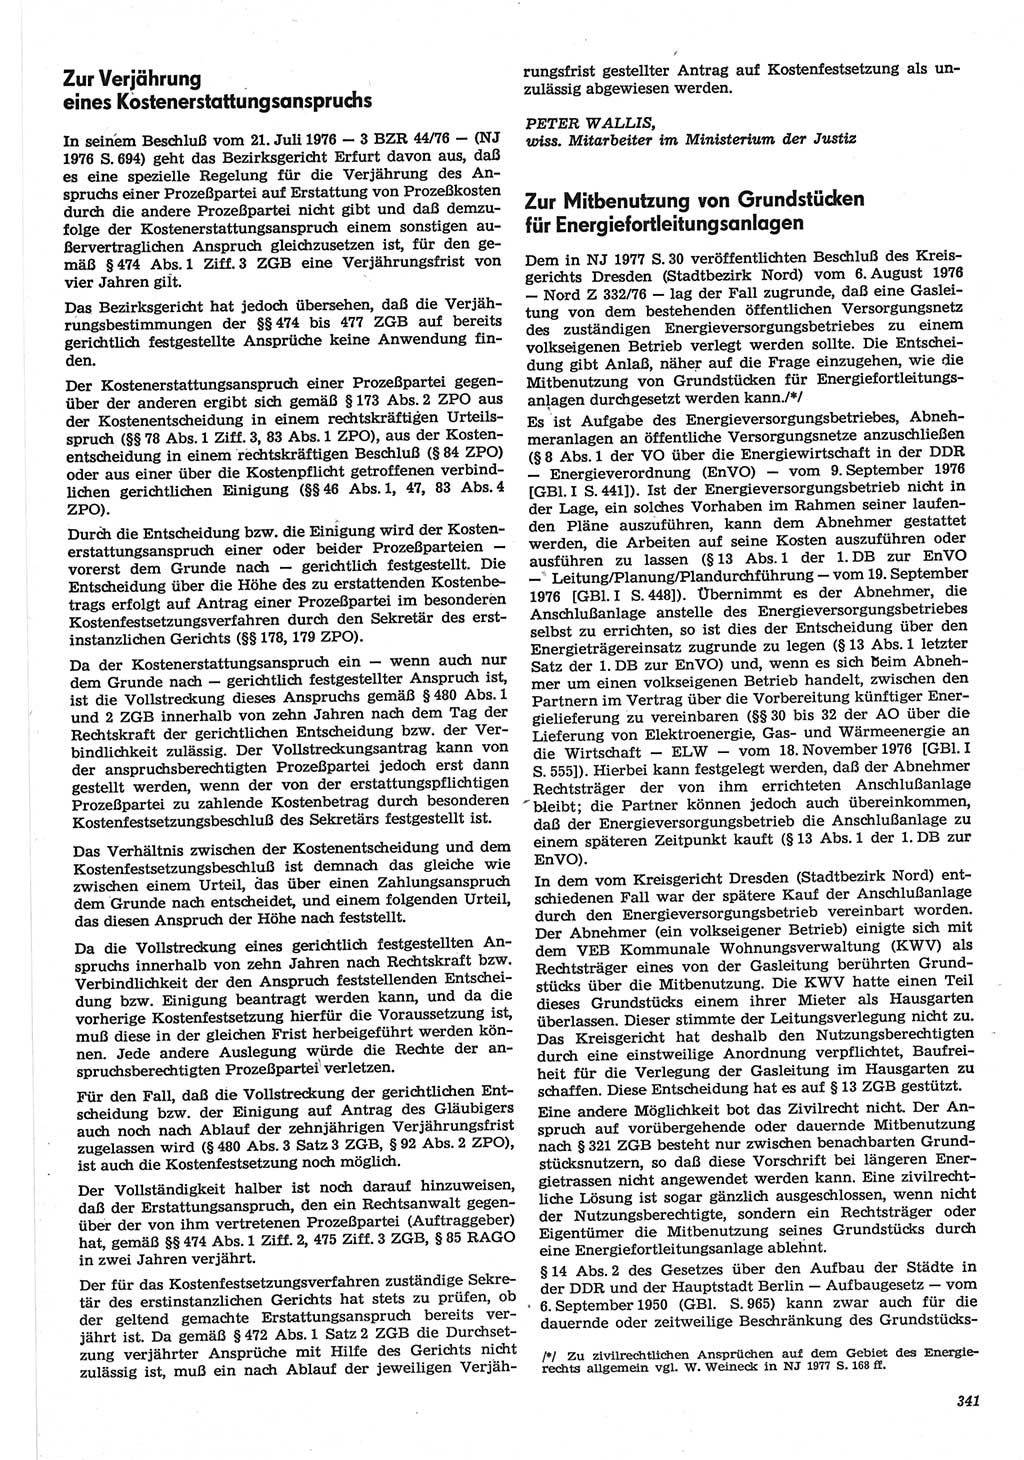 Neue Justiz (NJ), Zeitschrift für Recht und Rechtswissenschaft-Zeitschrift, sozialistisches Recht und Gesetzlichkeit, 31. Jahrgang 1977, Seite 341 (NJ DDR 1977, S. 341)